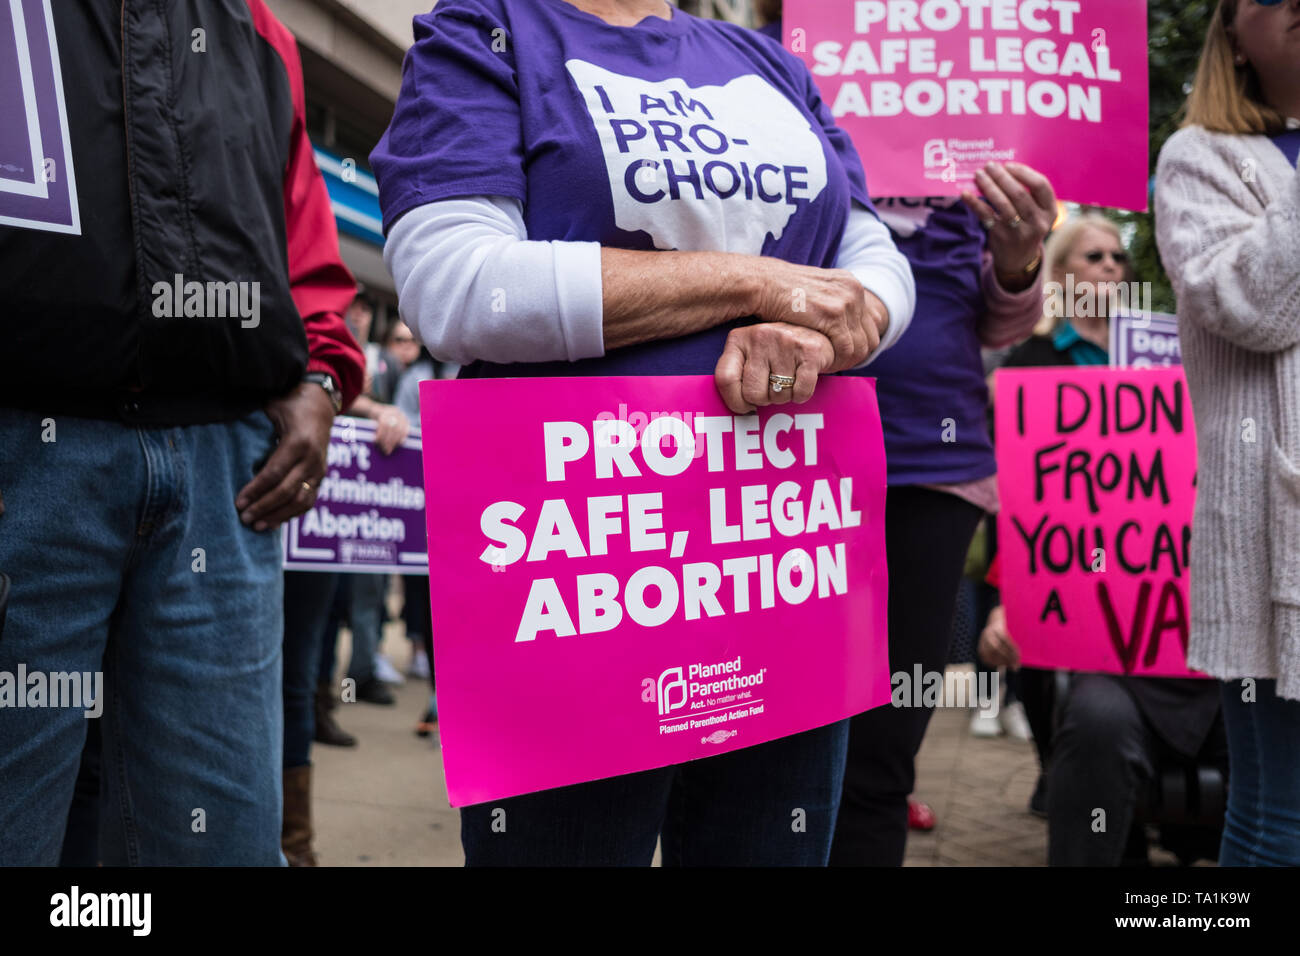 Ein Aktivist gesehen Holding eine Plakette, die besagt, dass eine sichere, legale Abtreibung während des Protestes zu schützen. Abtreibung Rechte Aktivisten nahmen teil im Stop die Verbote, die Rallye allgemein nach mehreren Mitgliedstaaten fötalen Herzschlag Rechnungen bestehen. Stockfoto